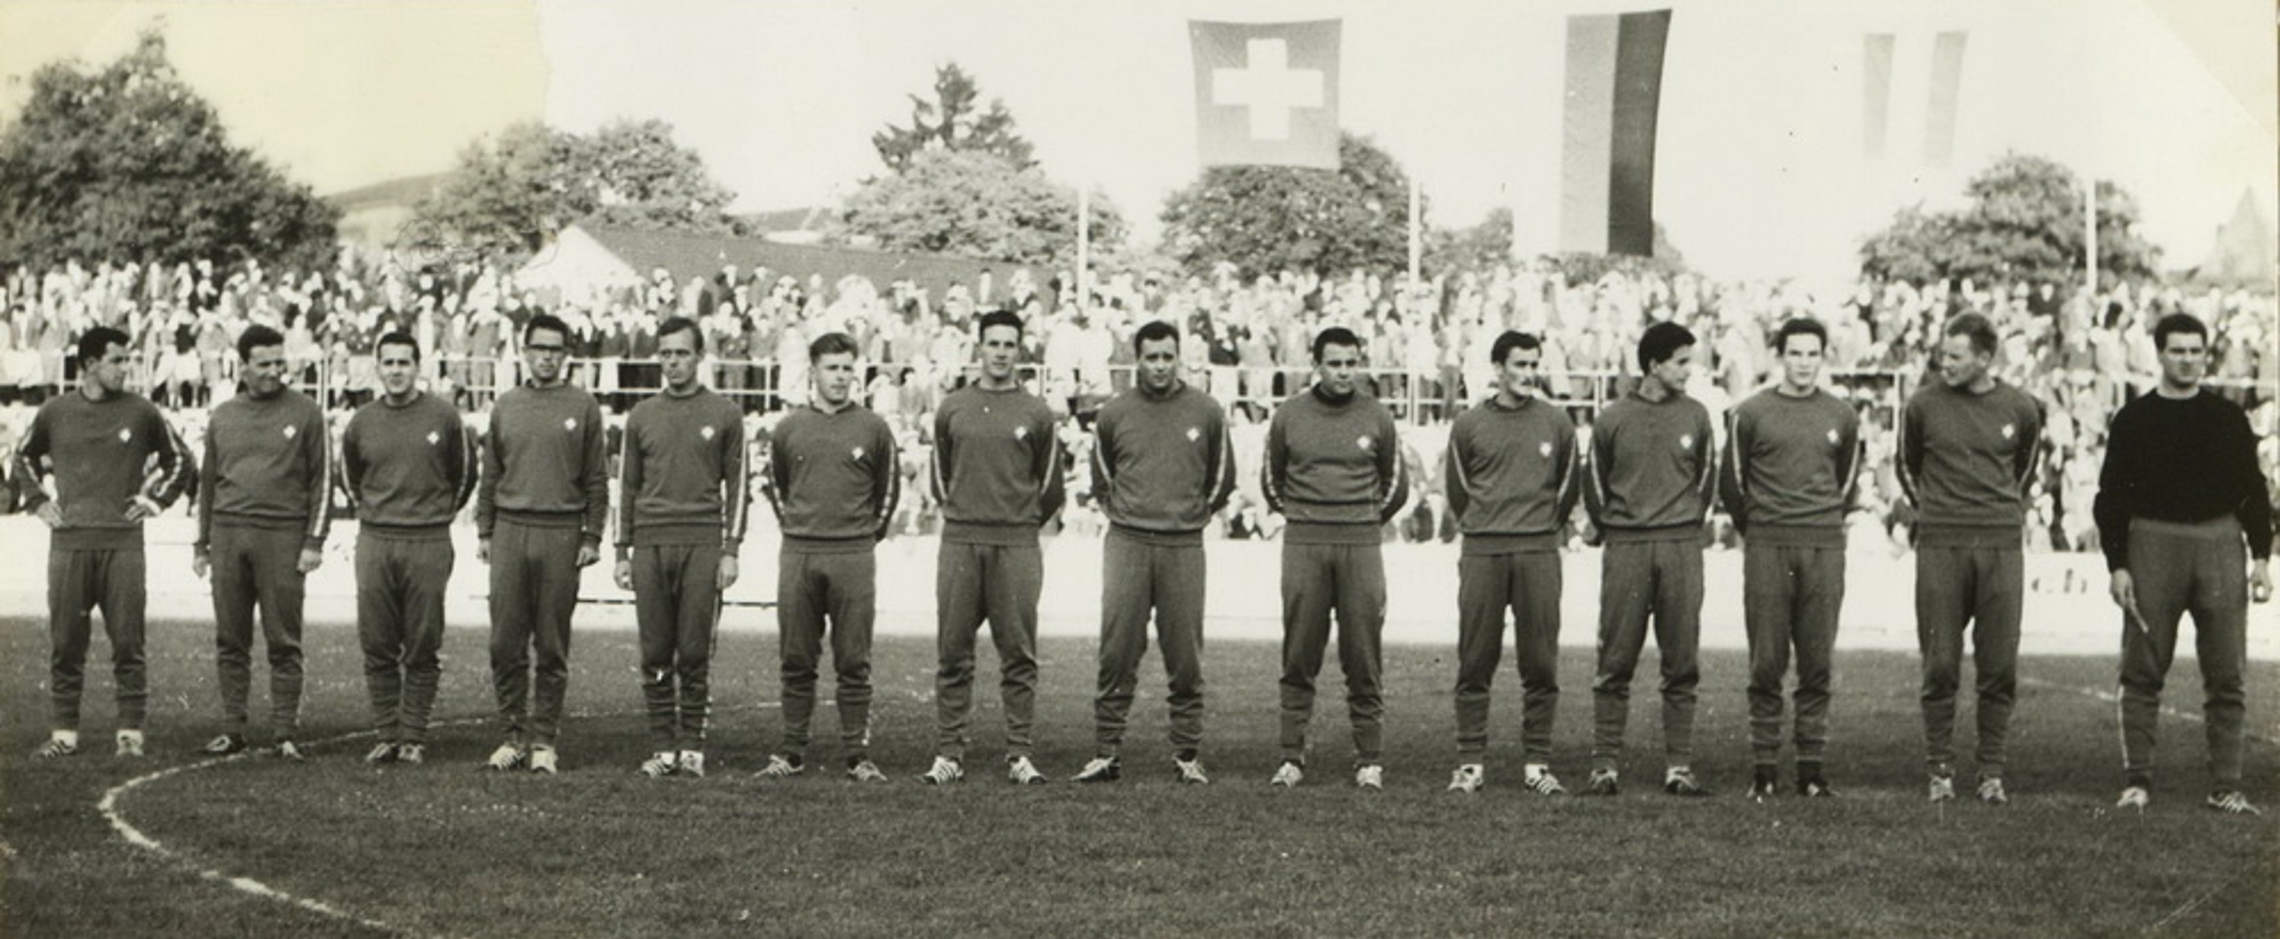 30.5.1961 Schweiz - Österreich 17:12 (9:6), Winterthur, Schützenwiese, 4000 Zuschauer, Schiedsrichter Karl Jung, Augsburg GER